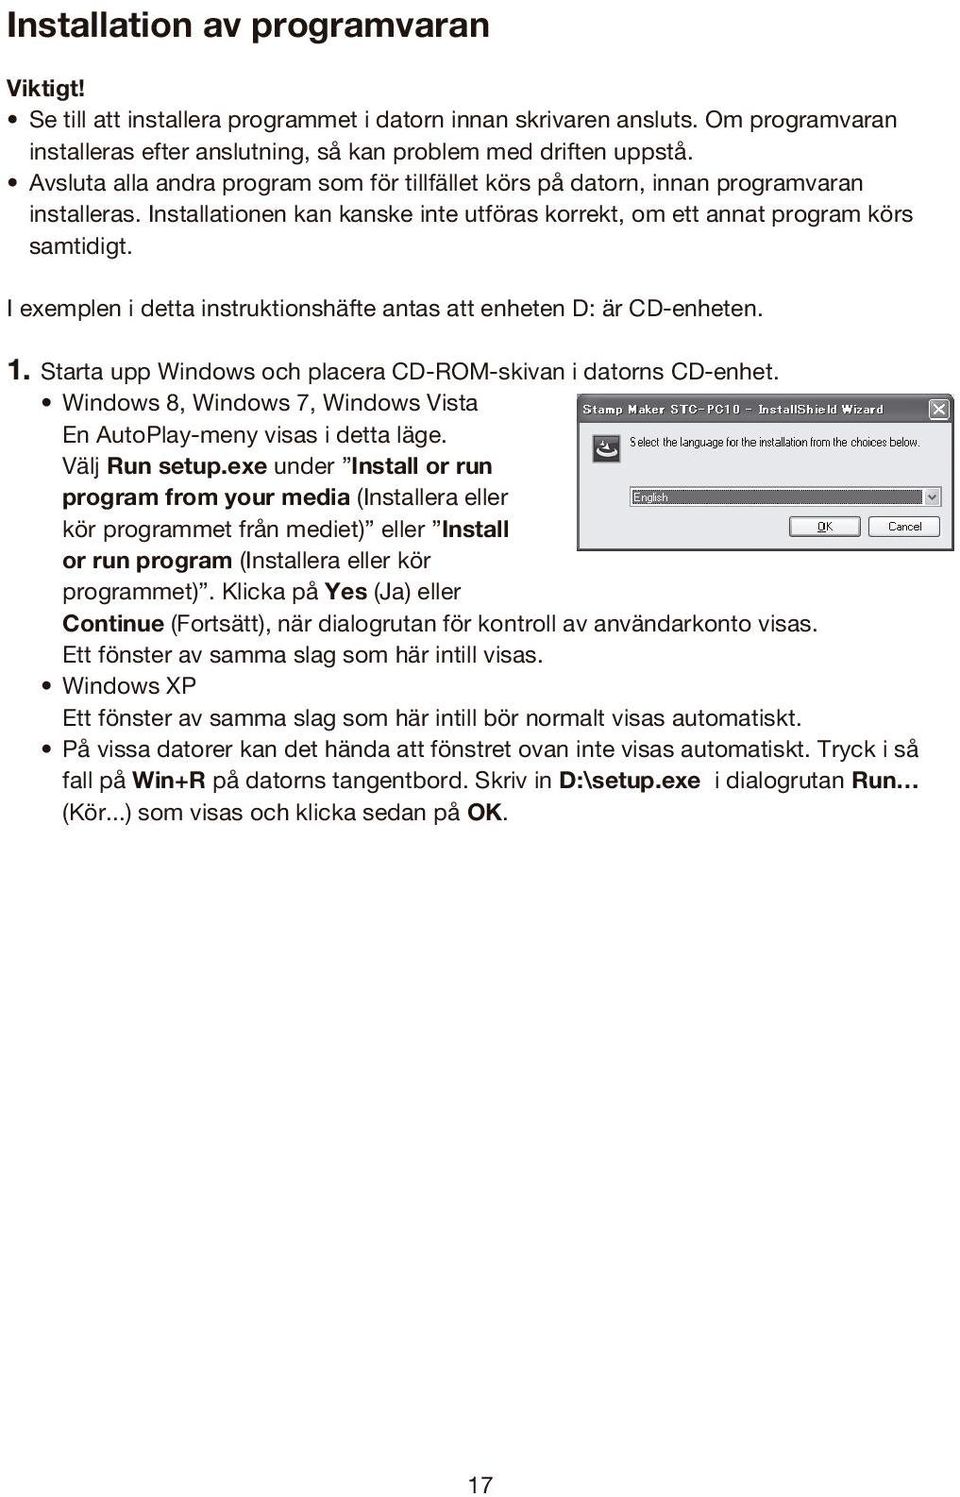 I exemplen i detta instruktionshäfte antas att enheten D: är CD-enheten. 1. Starta upp Windows och placera CD-ROM-skivan i datorns CD-enhet.